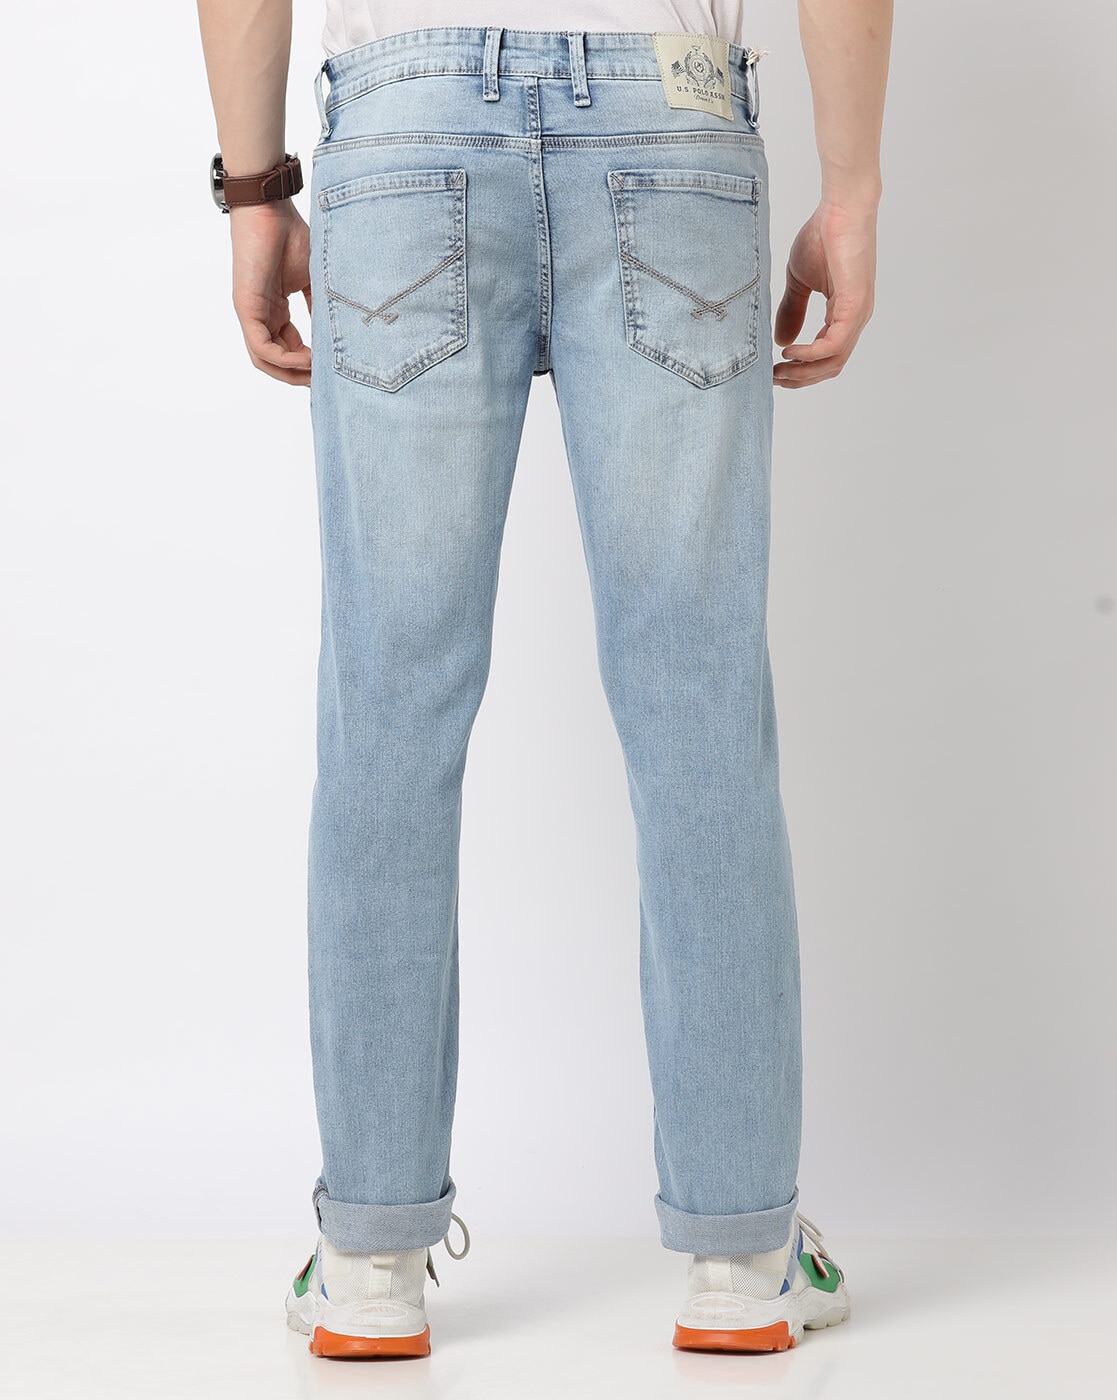 Bare Denim 1991 Jeans Straight Leg Denim Mid Rise Distressed Pockets W32  L33 Zip | eBay